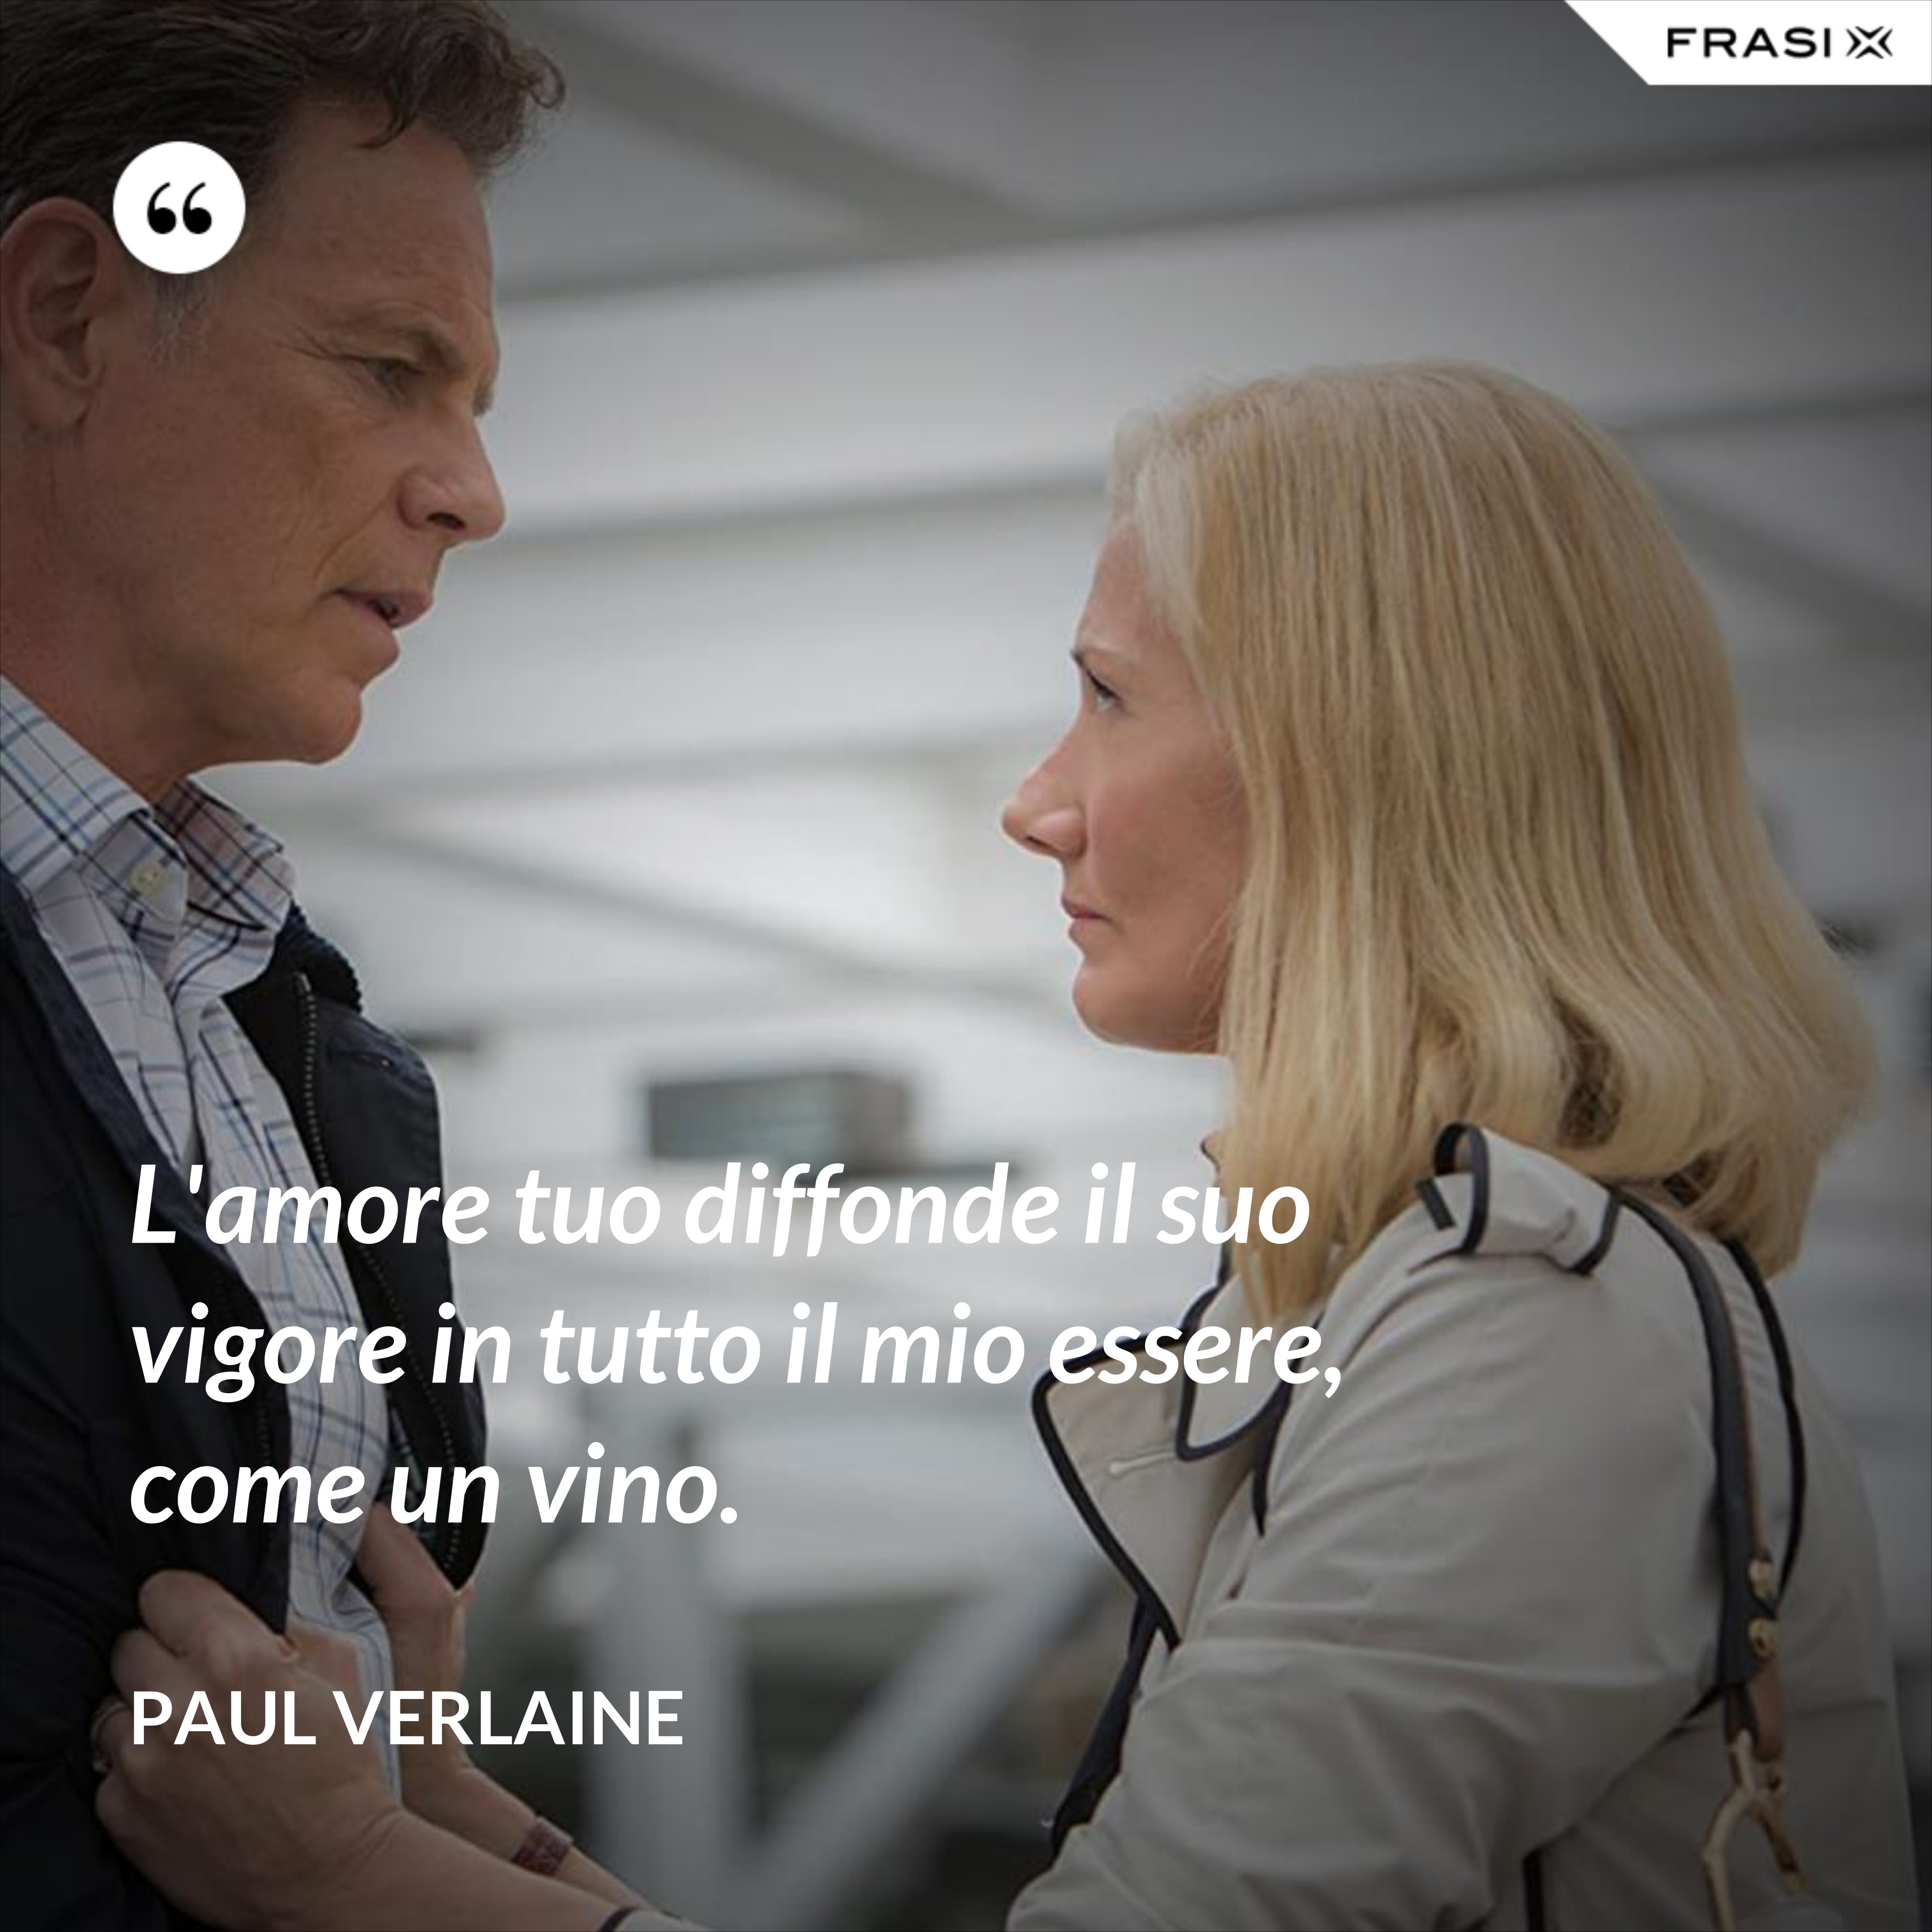 L'amore tuo diffonde il suo vigore in tutto il mio essere, come un vino. - Paul Verlaine